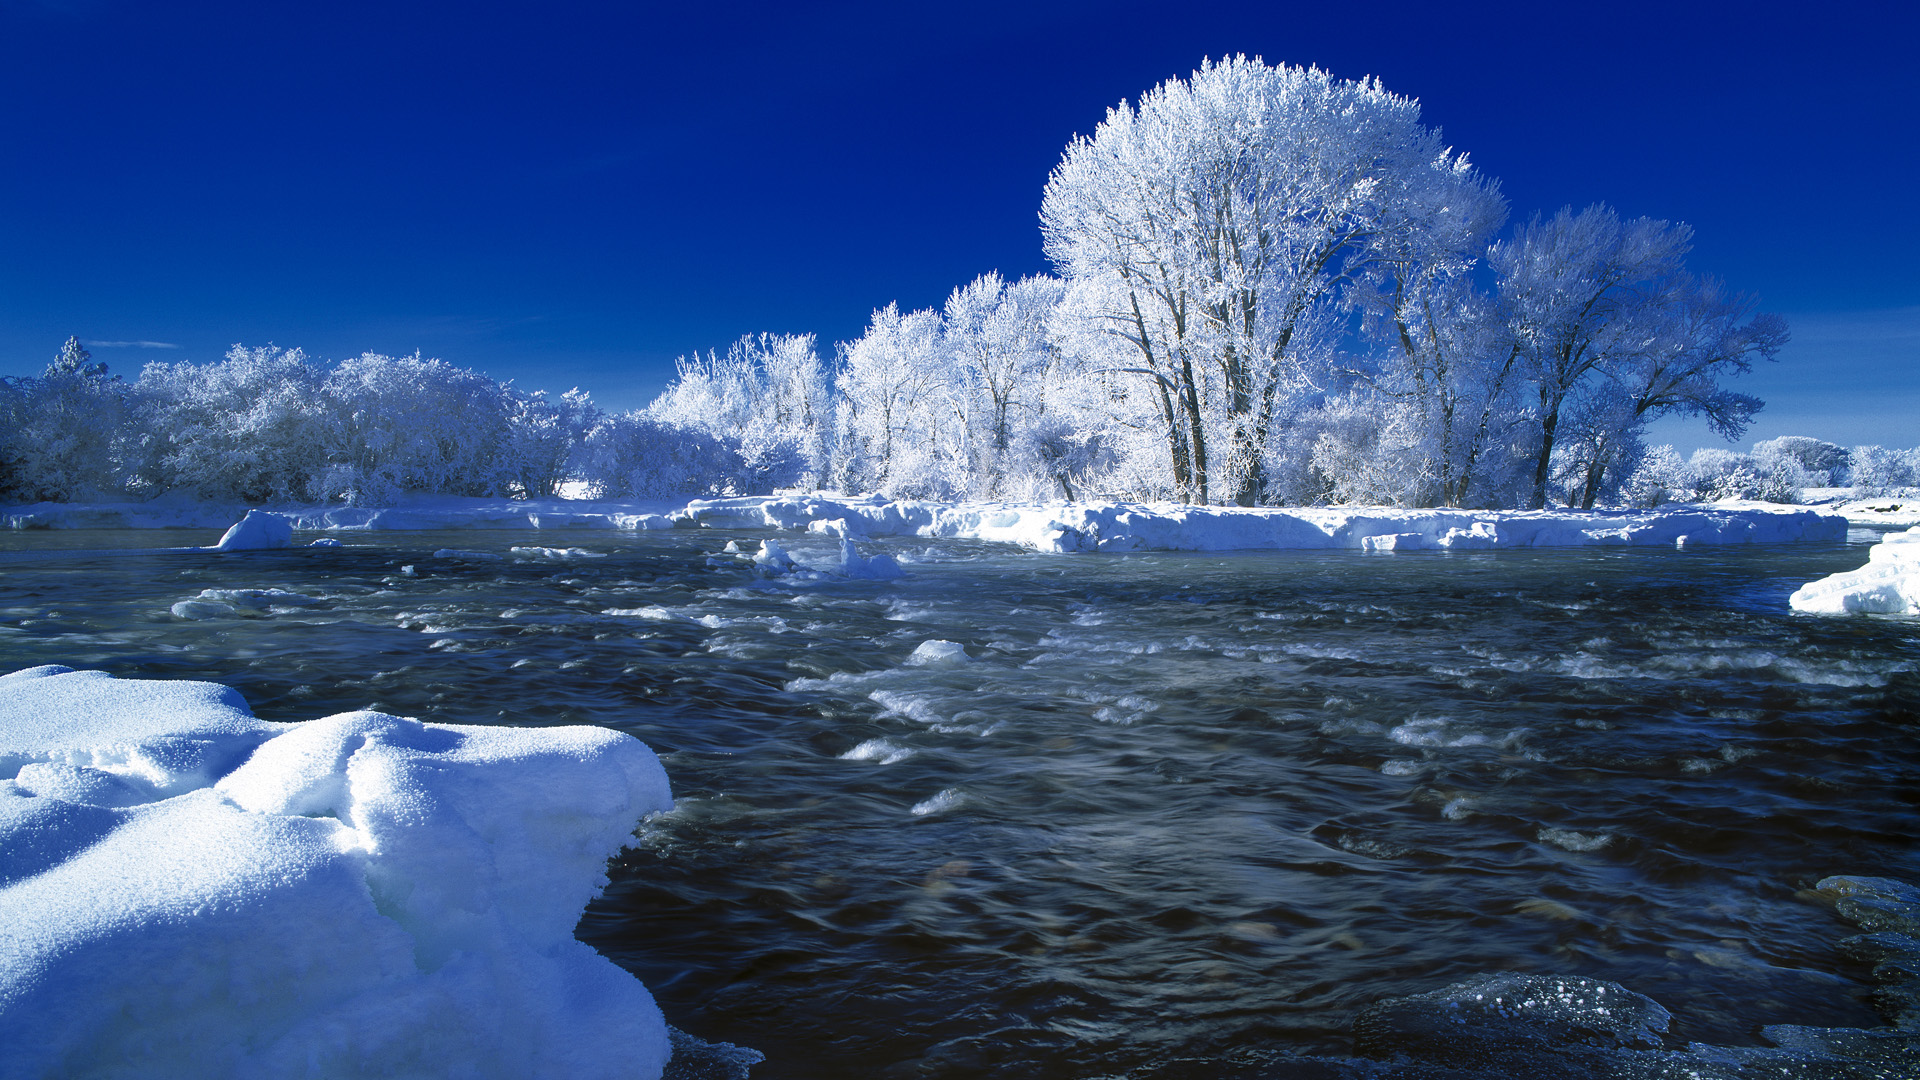 Скачать обои бесплатно Зима, Река, Снег, Дерево, Земля/природа картинка на рабочий стол ПК